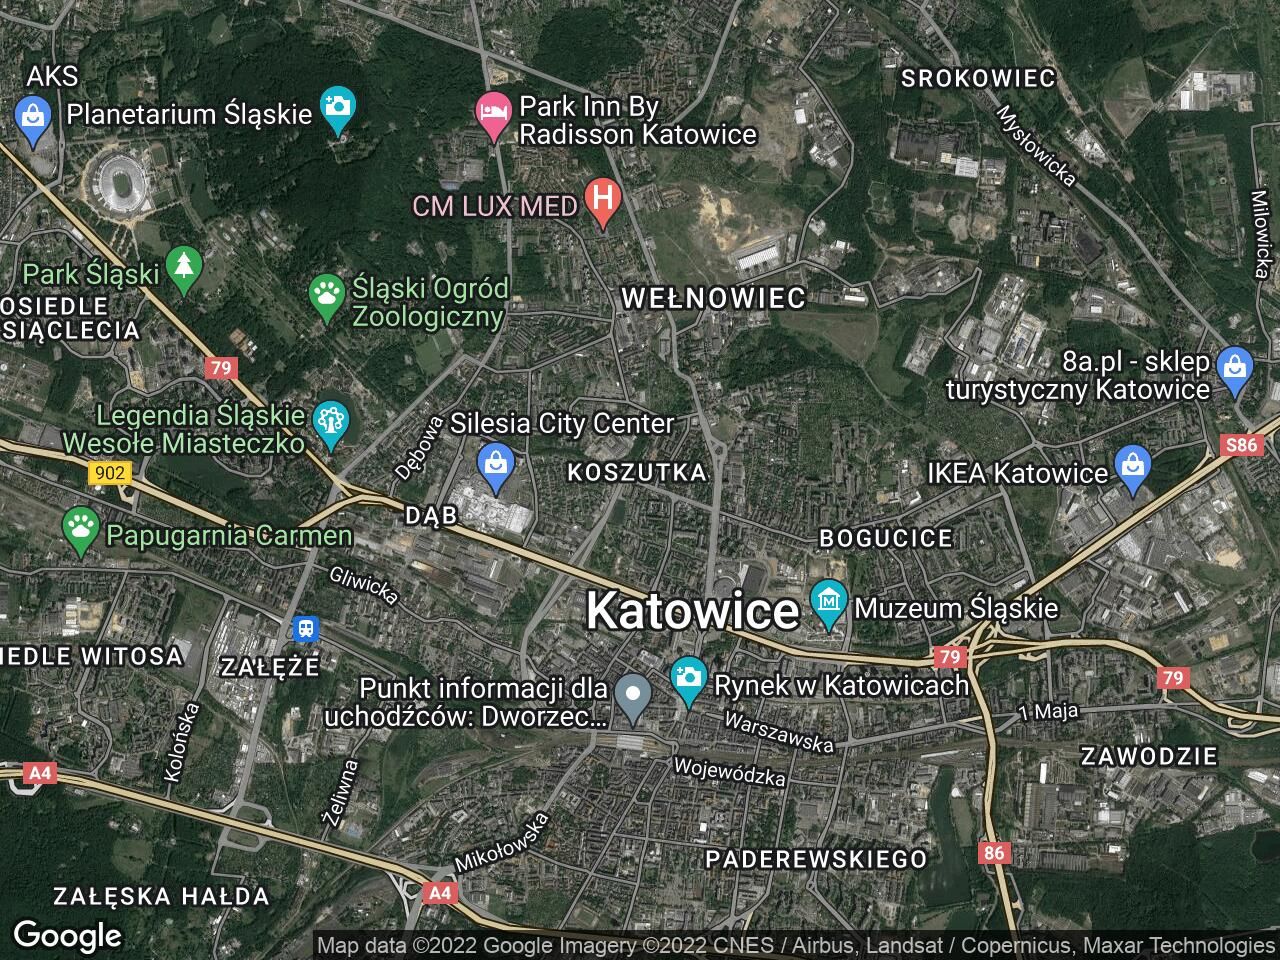 Lokal Katowice Koszutka